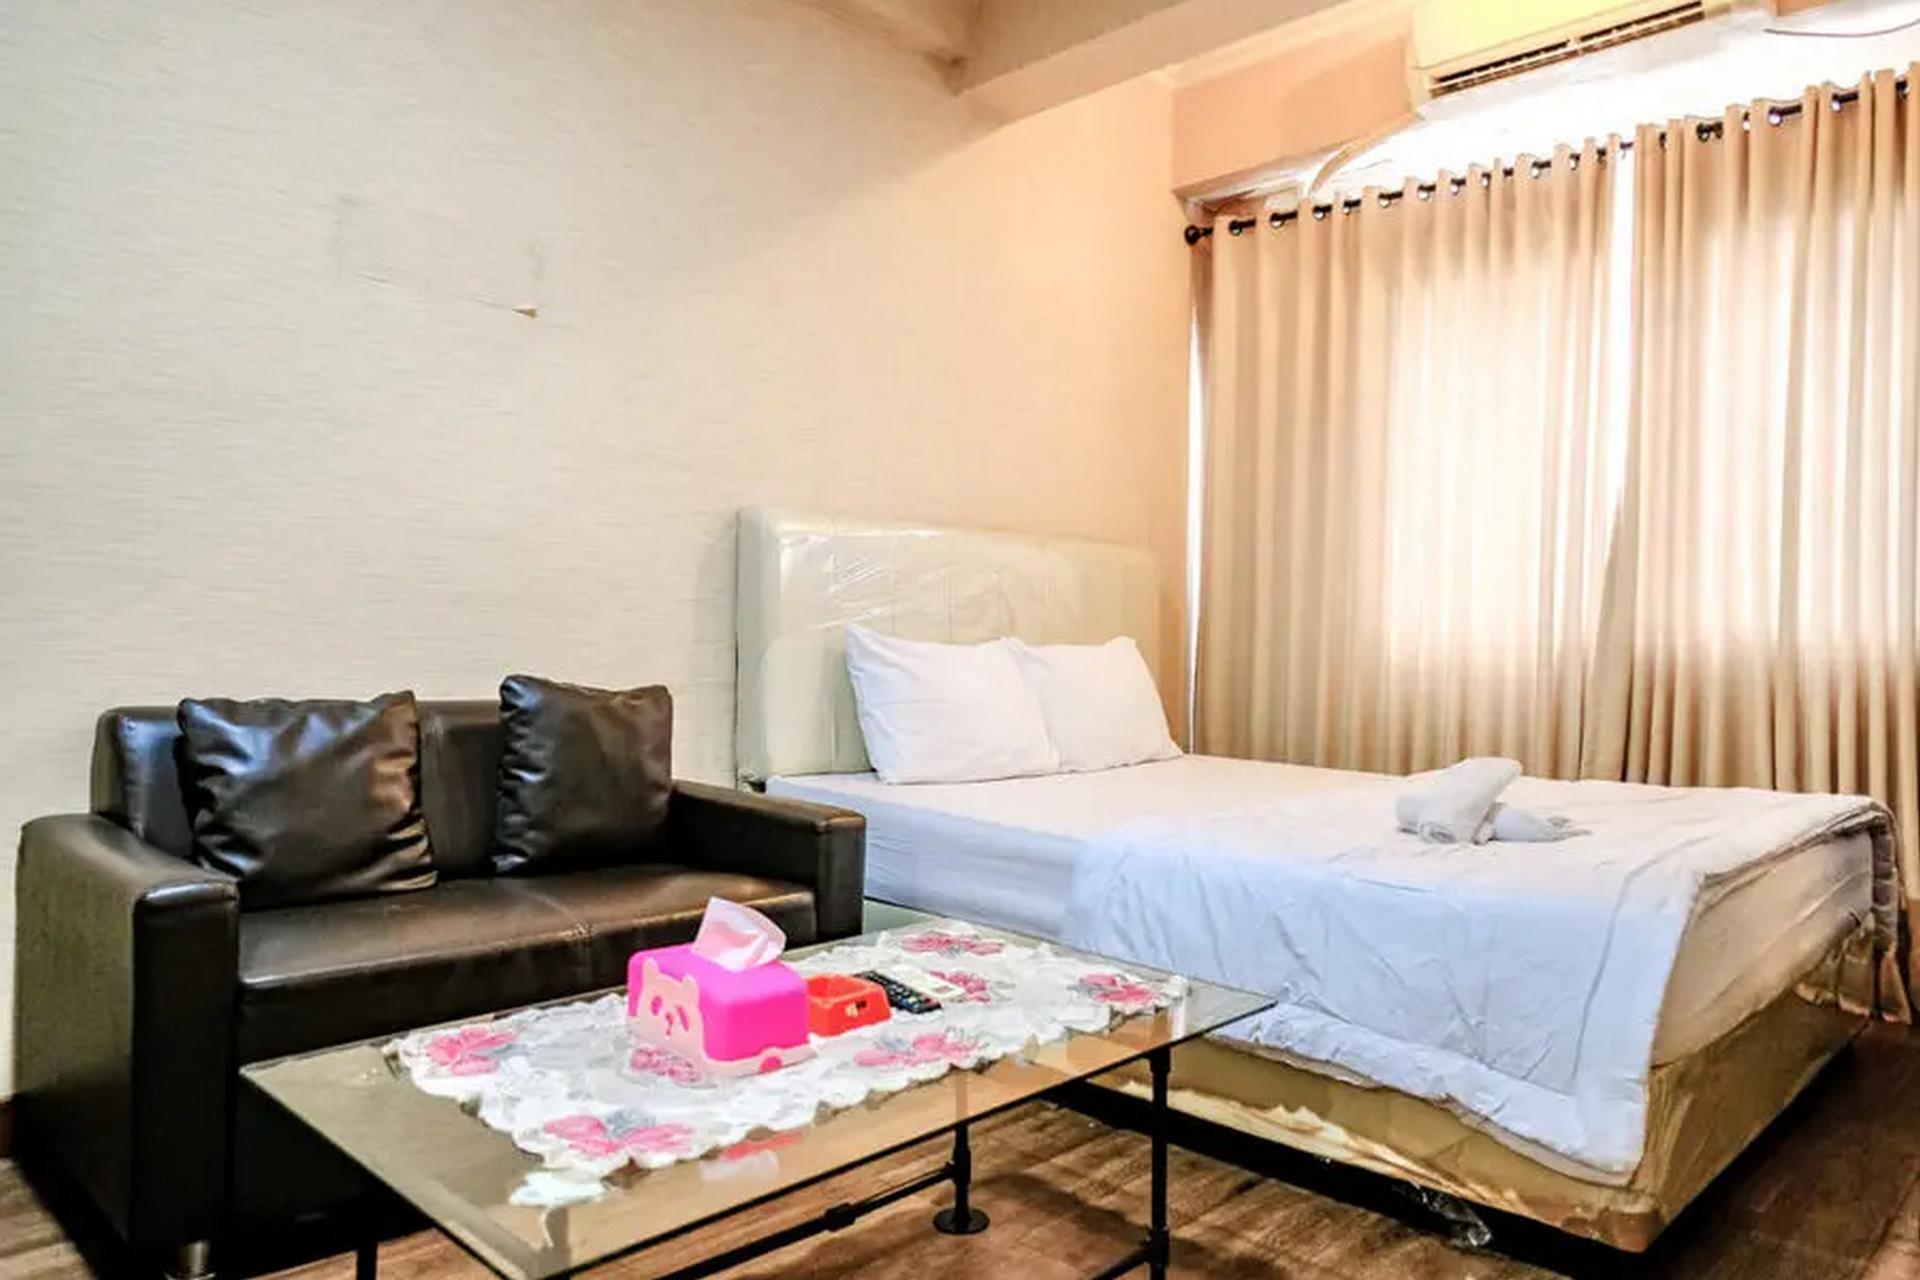 Bedroom 3, Apartemen City Park - Rendy Room Tower H18, Jakarta Barat